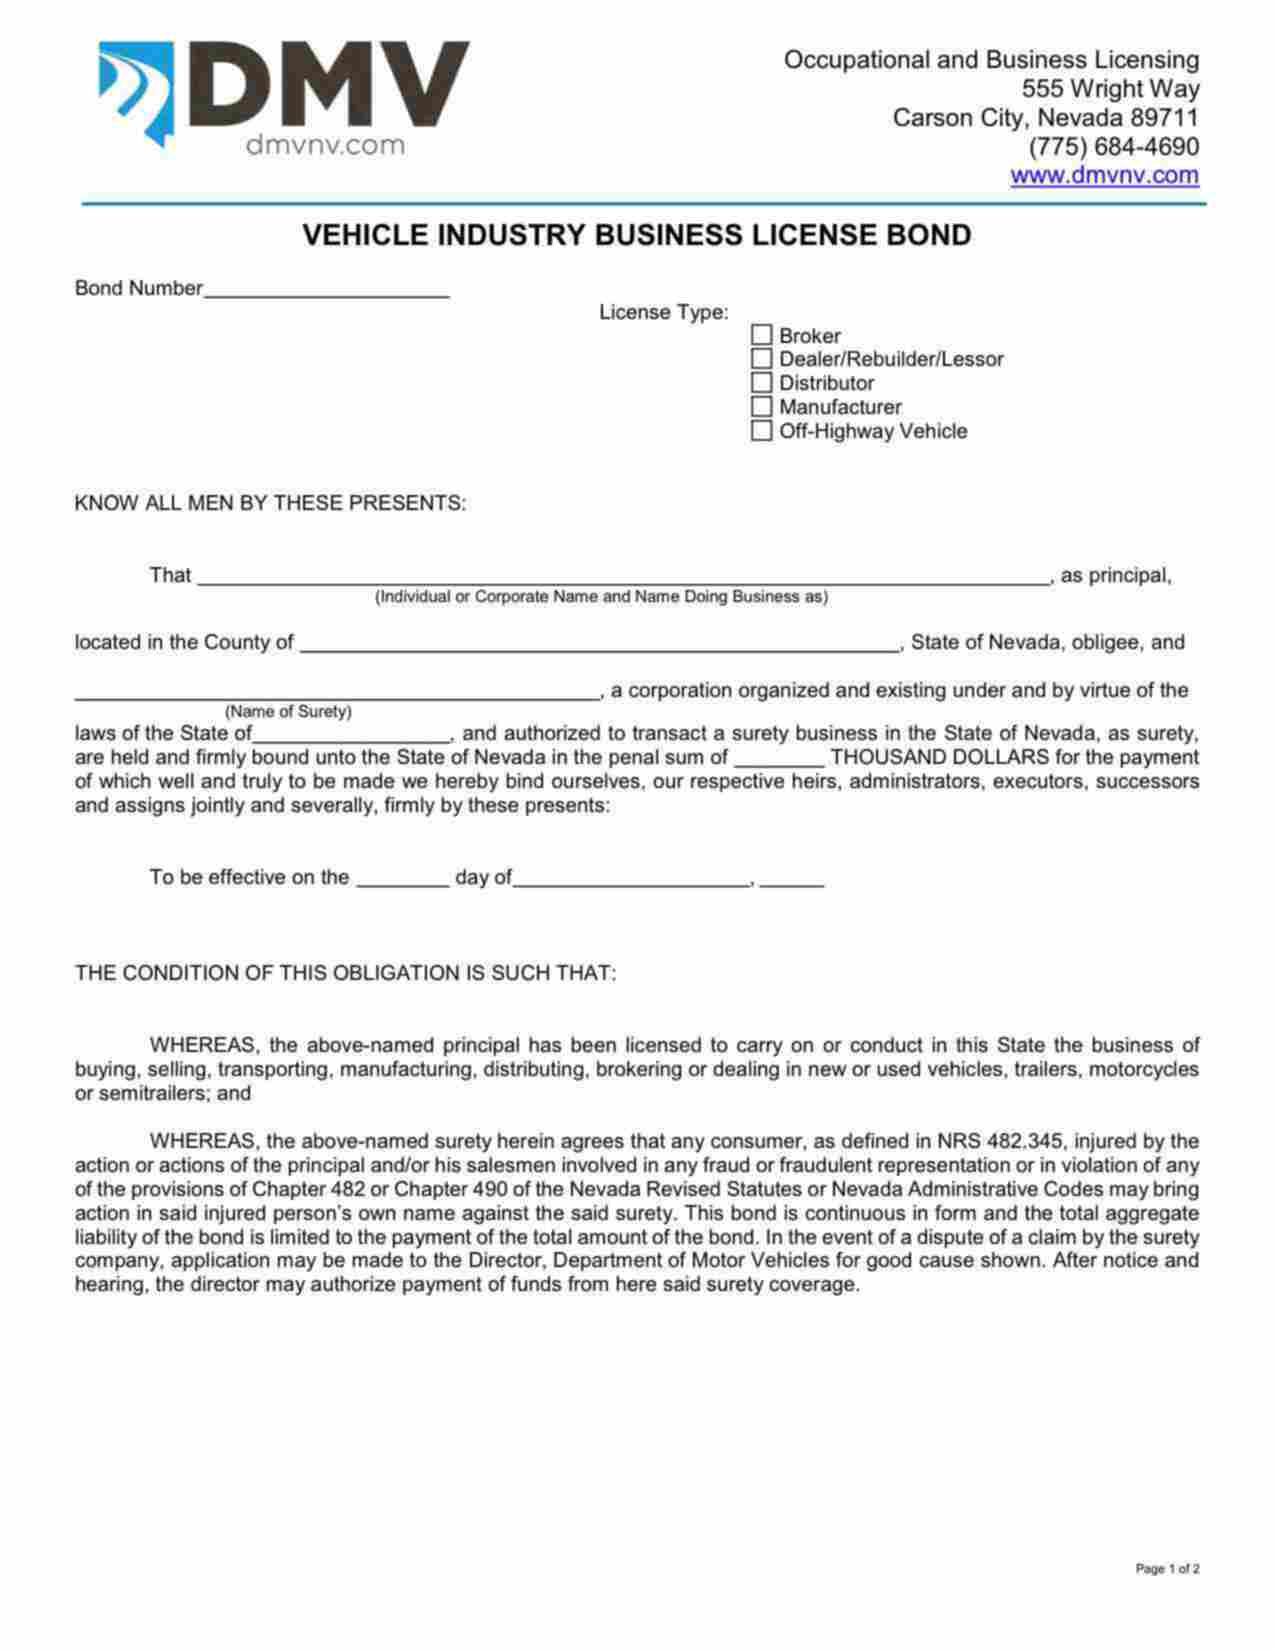 Nevada Motor Vehicle Dealer/ Rebuilder/ Lessor Bond Form